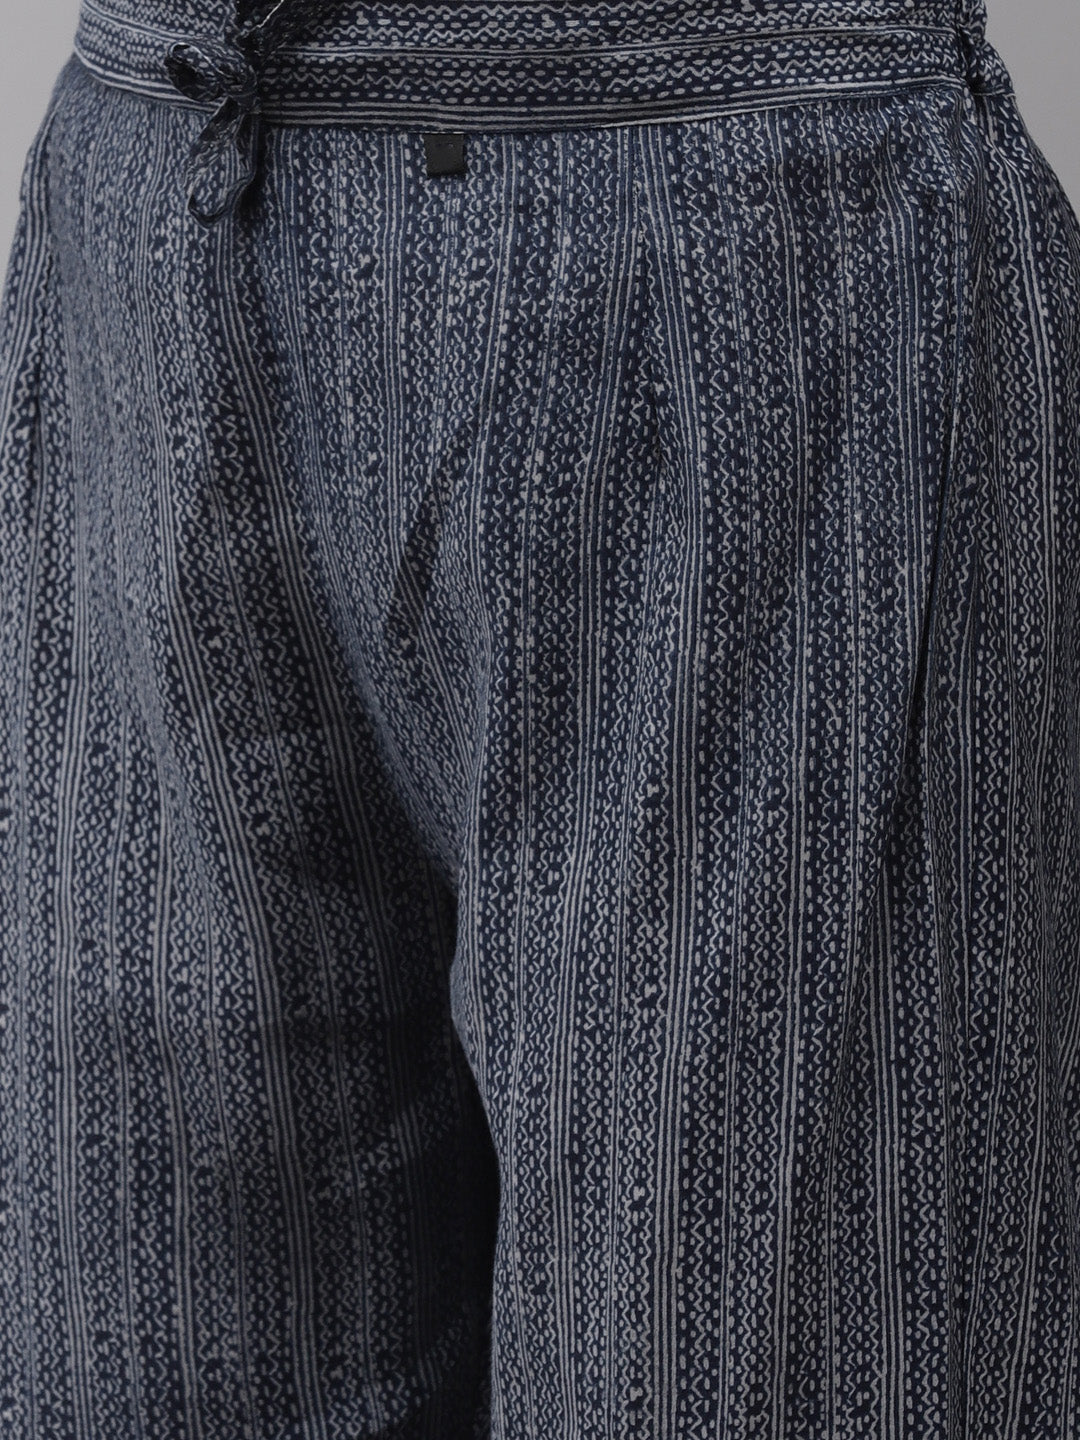 Women's Silk Blend Grey & Navy Blue Embroidered A-Line Kurta Trouser Dupatta Set - Navyaa